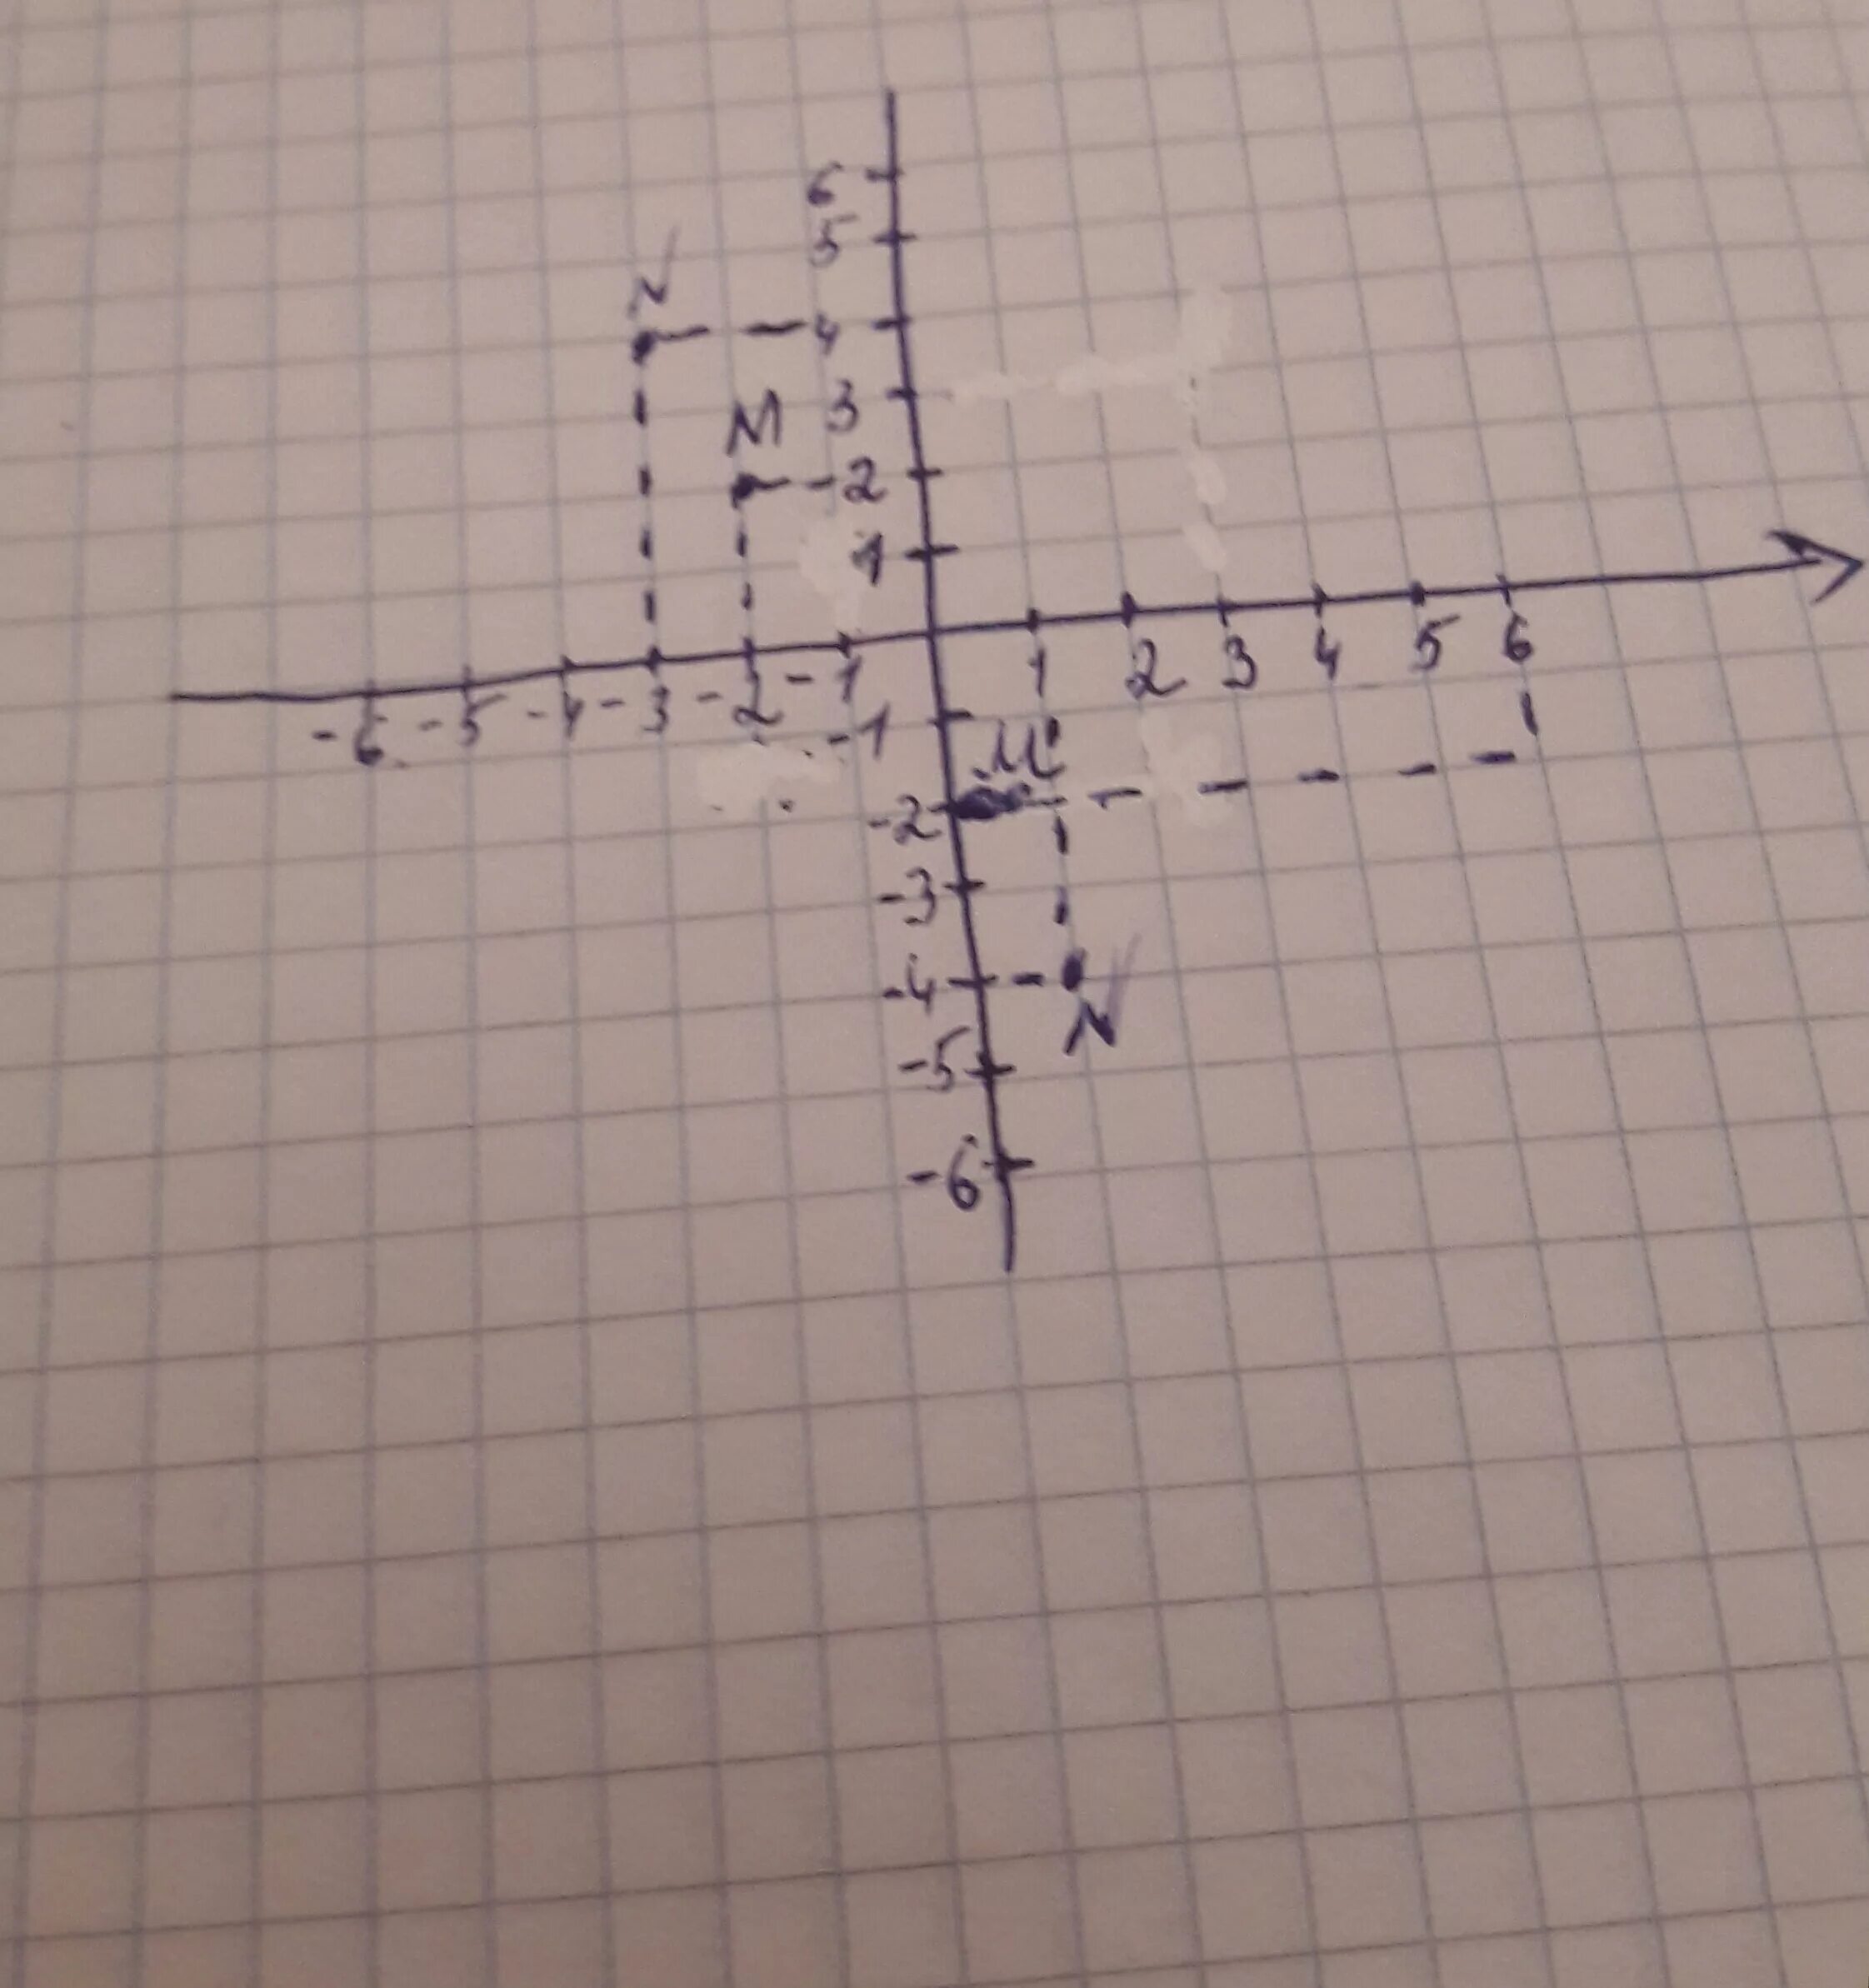 K к 0 1 м. Отметьте на координатной плоскости точки м. Отметьте на координатной плоскости точки м -6 3. Отметьте на координатной плоскости точки а -4 2. Отметьте на координатной плоскости точки м 4 3.